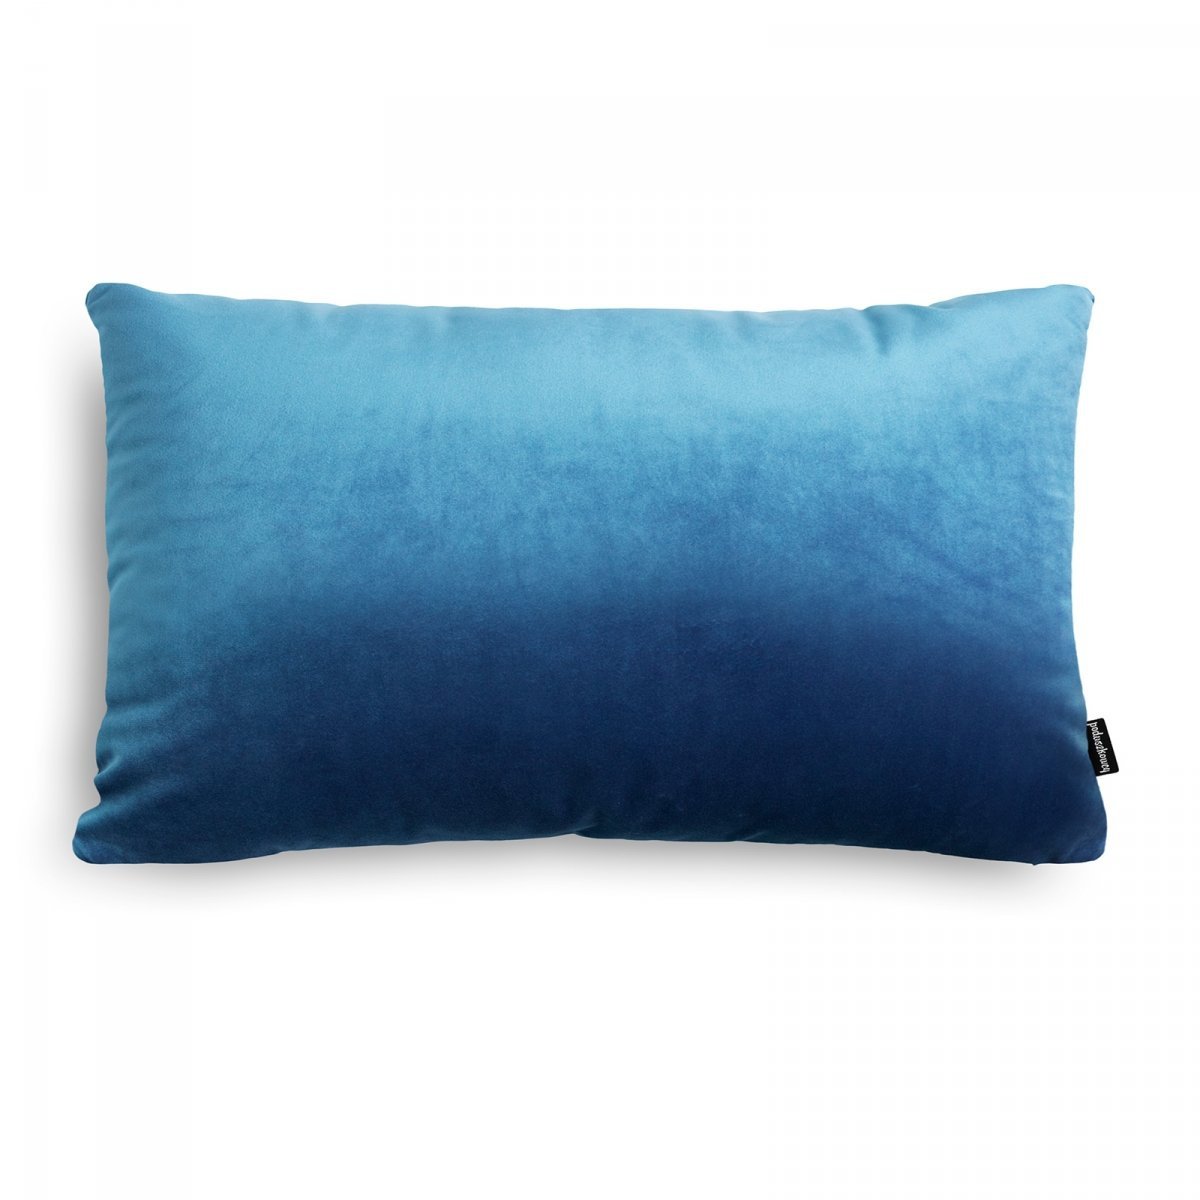 Velvet jasno niebieska poduszka dekoracyjna 50x30